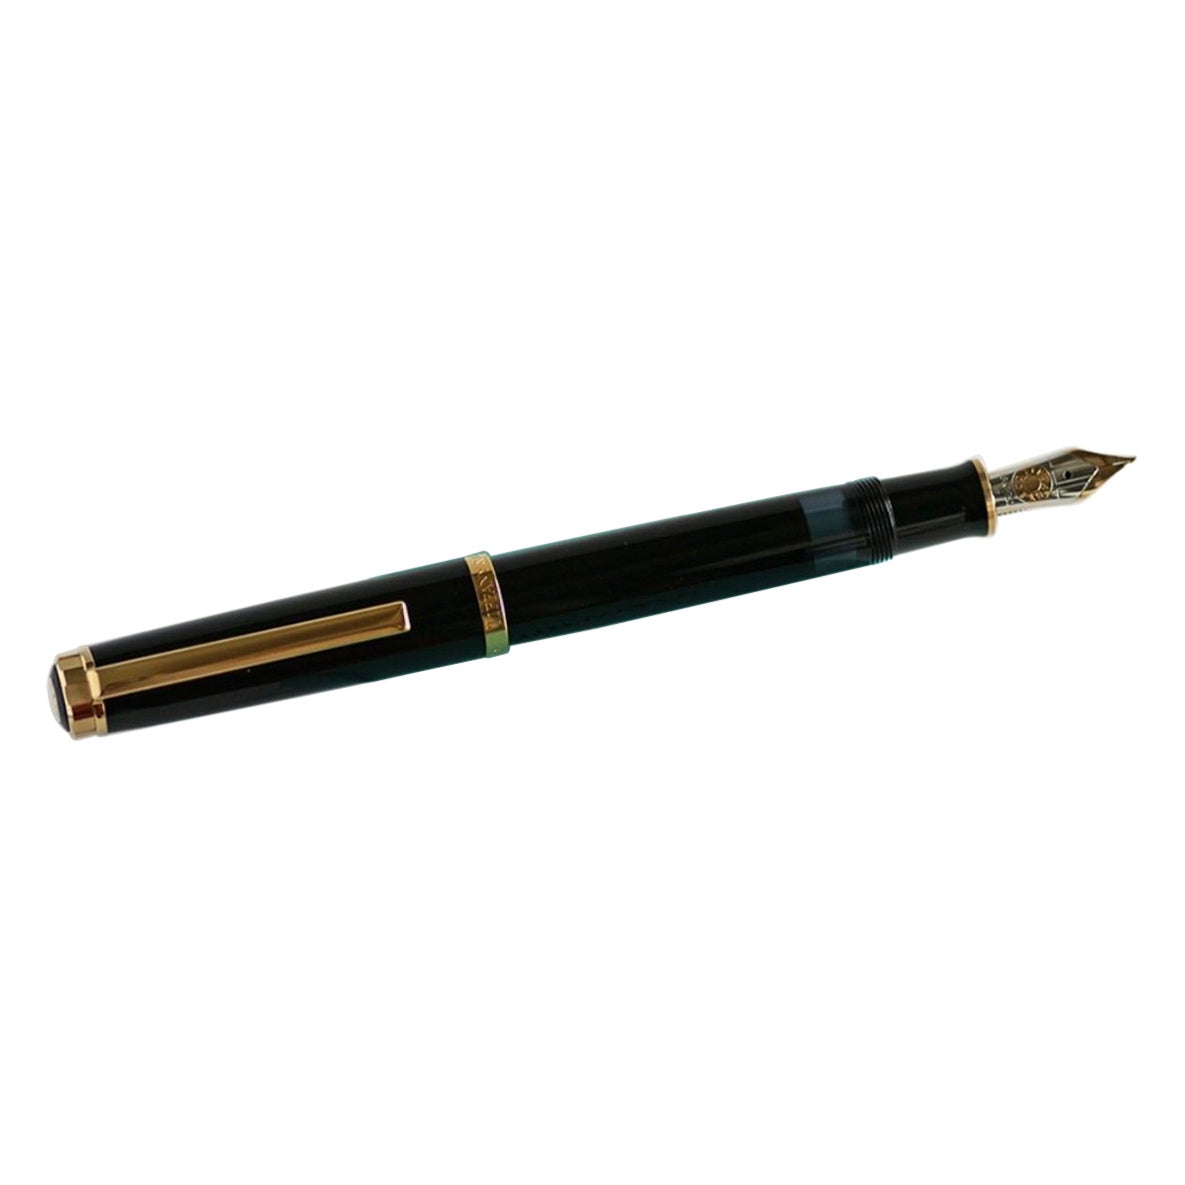 Tiffany & Co. Stylo Atlas Executive Fountain Pen Or Noir 18k Nib w/Case Excellent